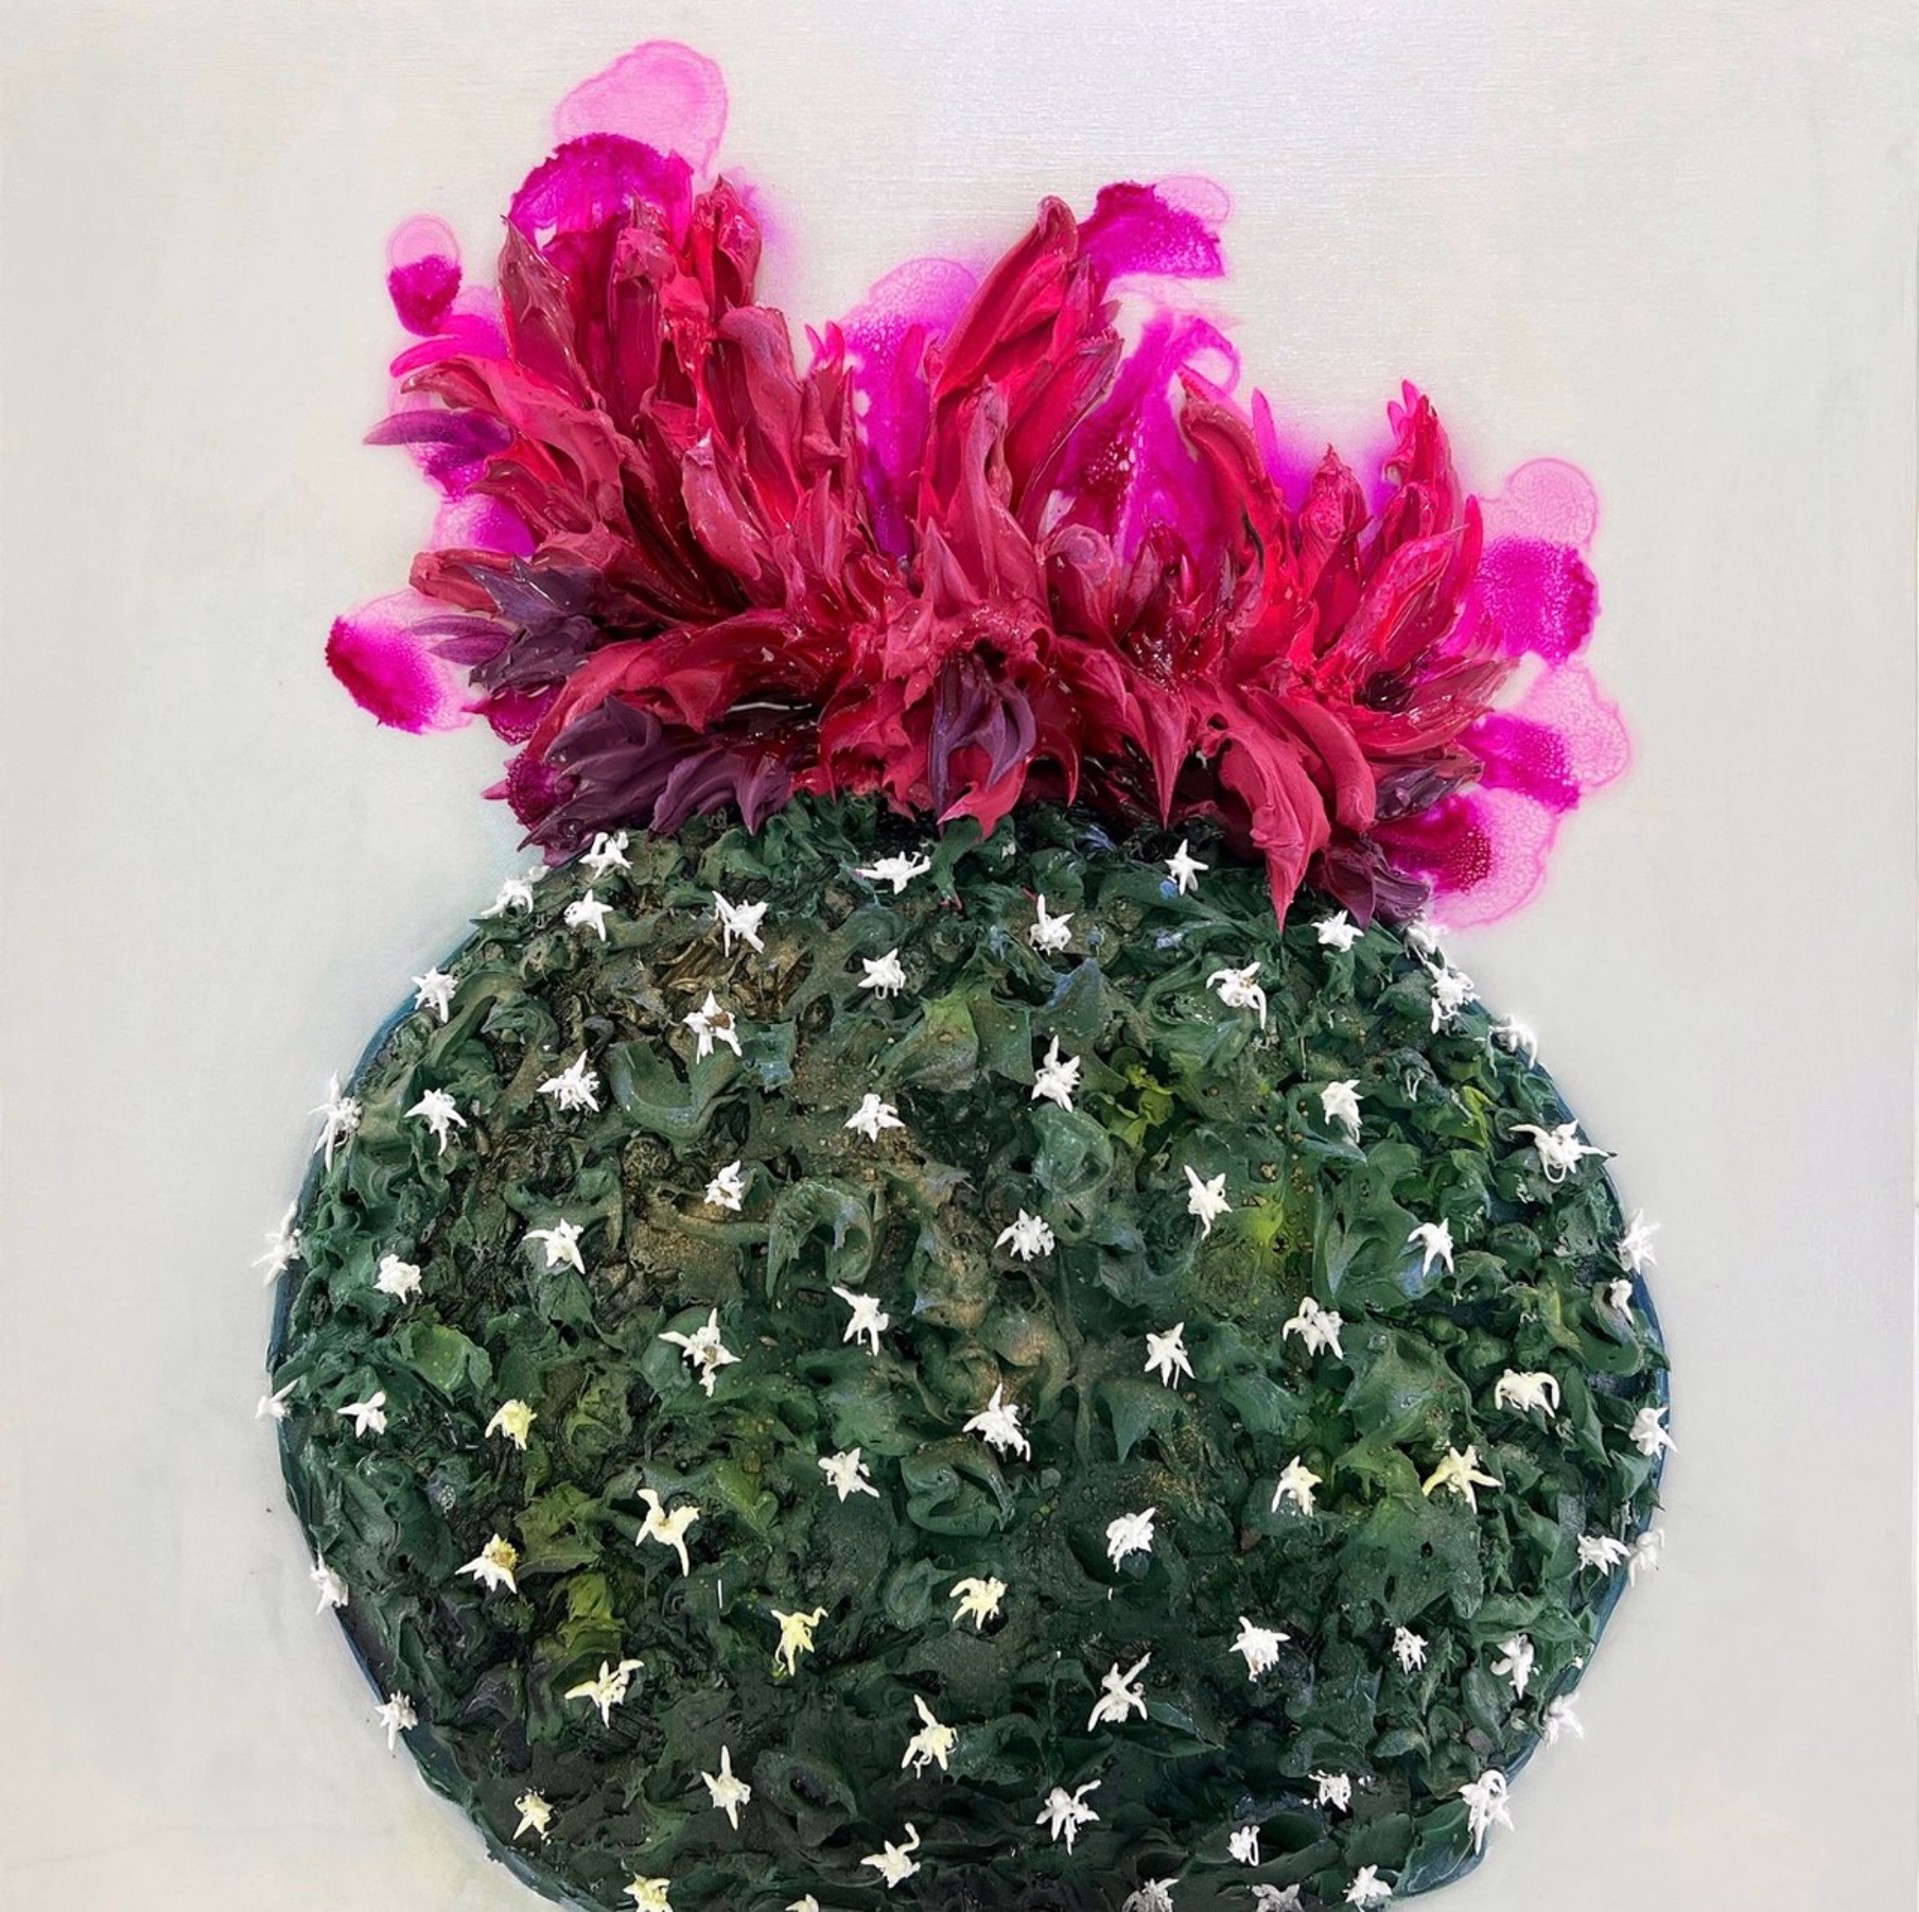 Spiky Beauty by Nicoletta Belletti